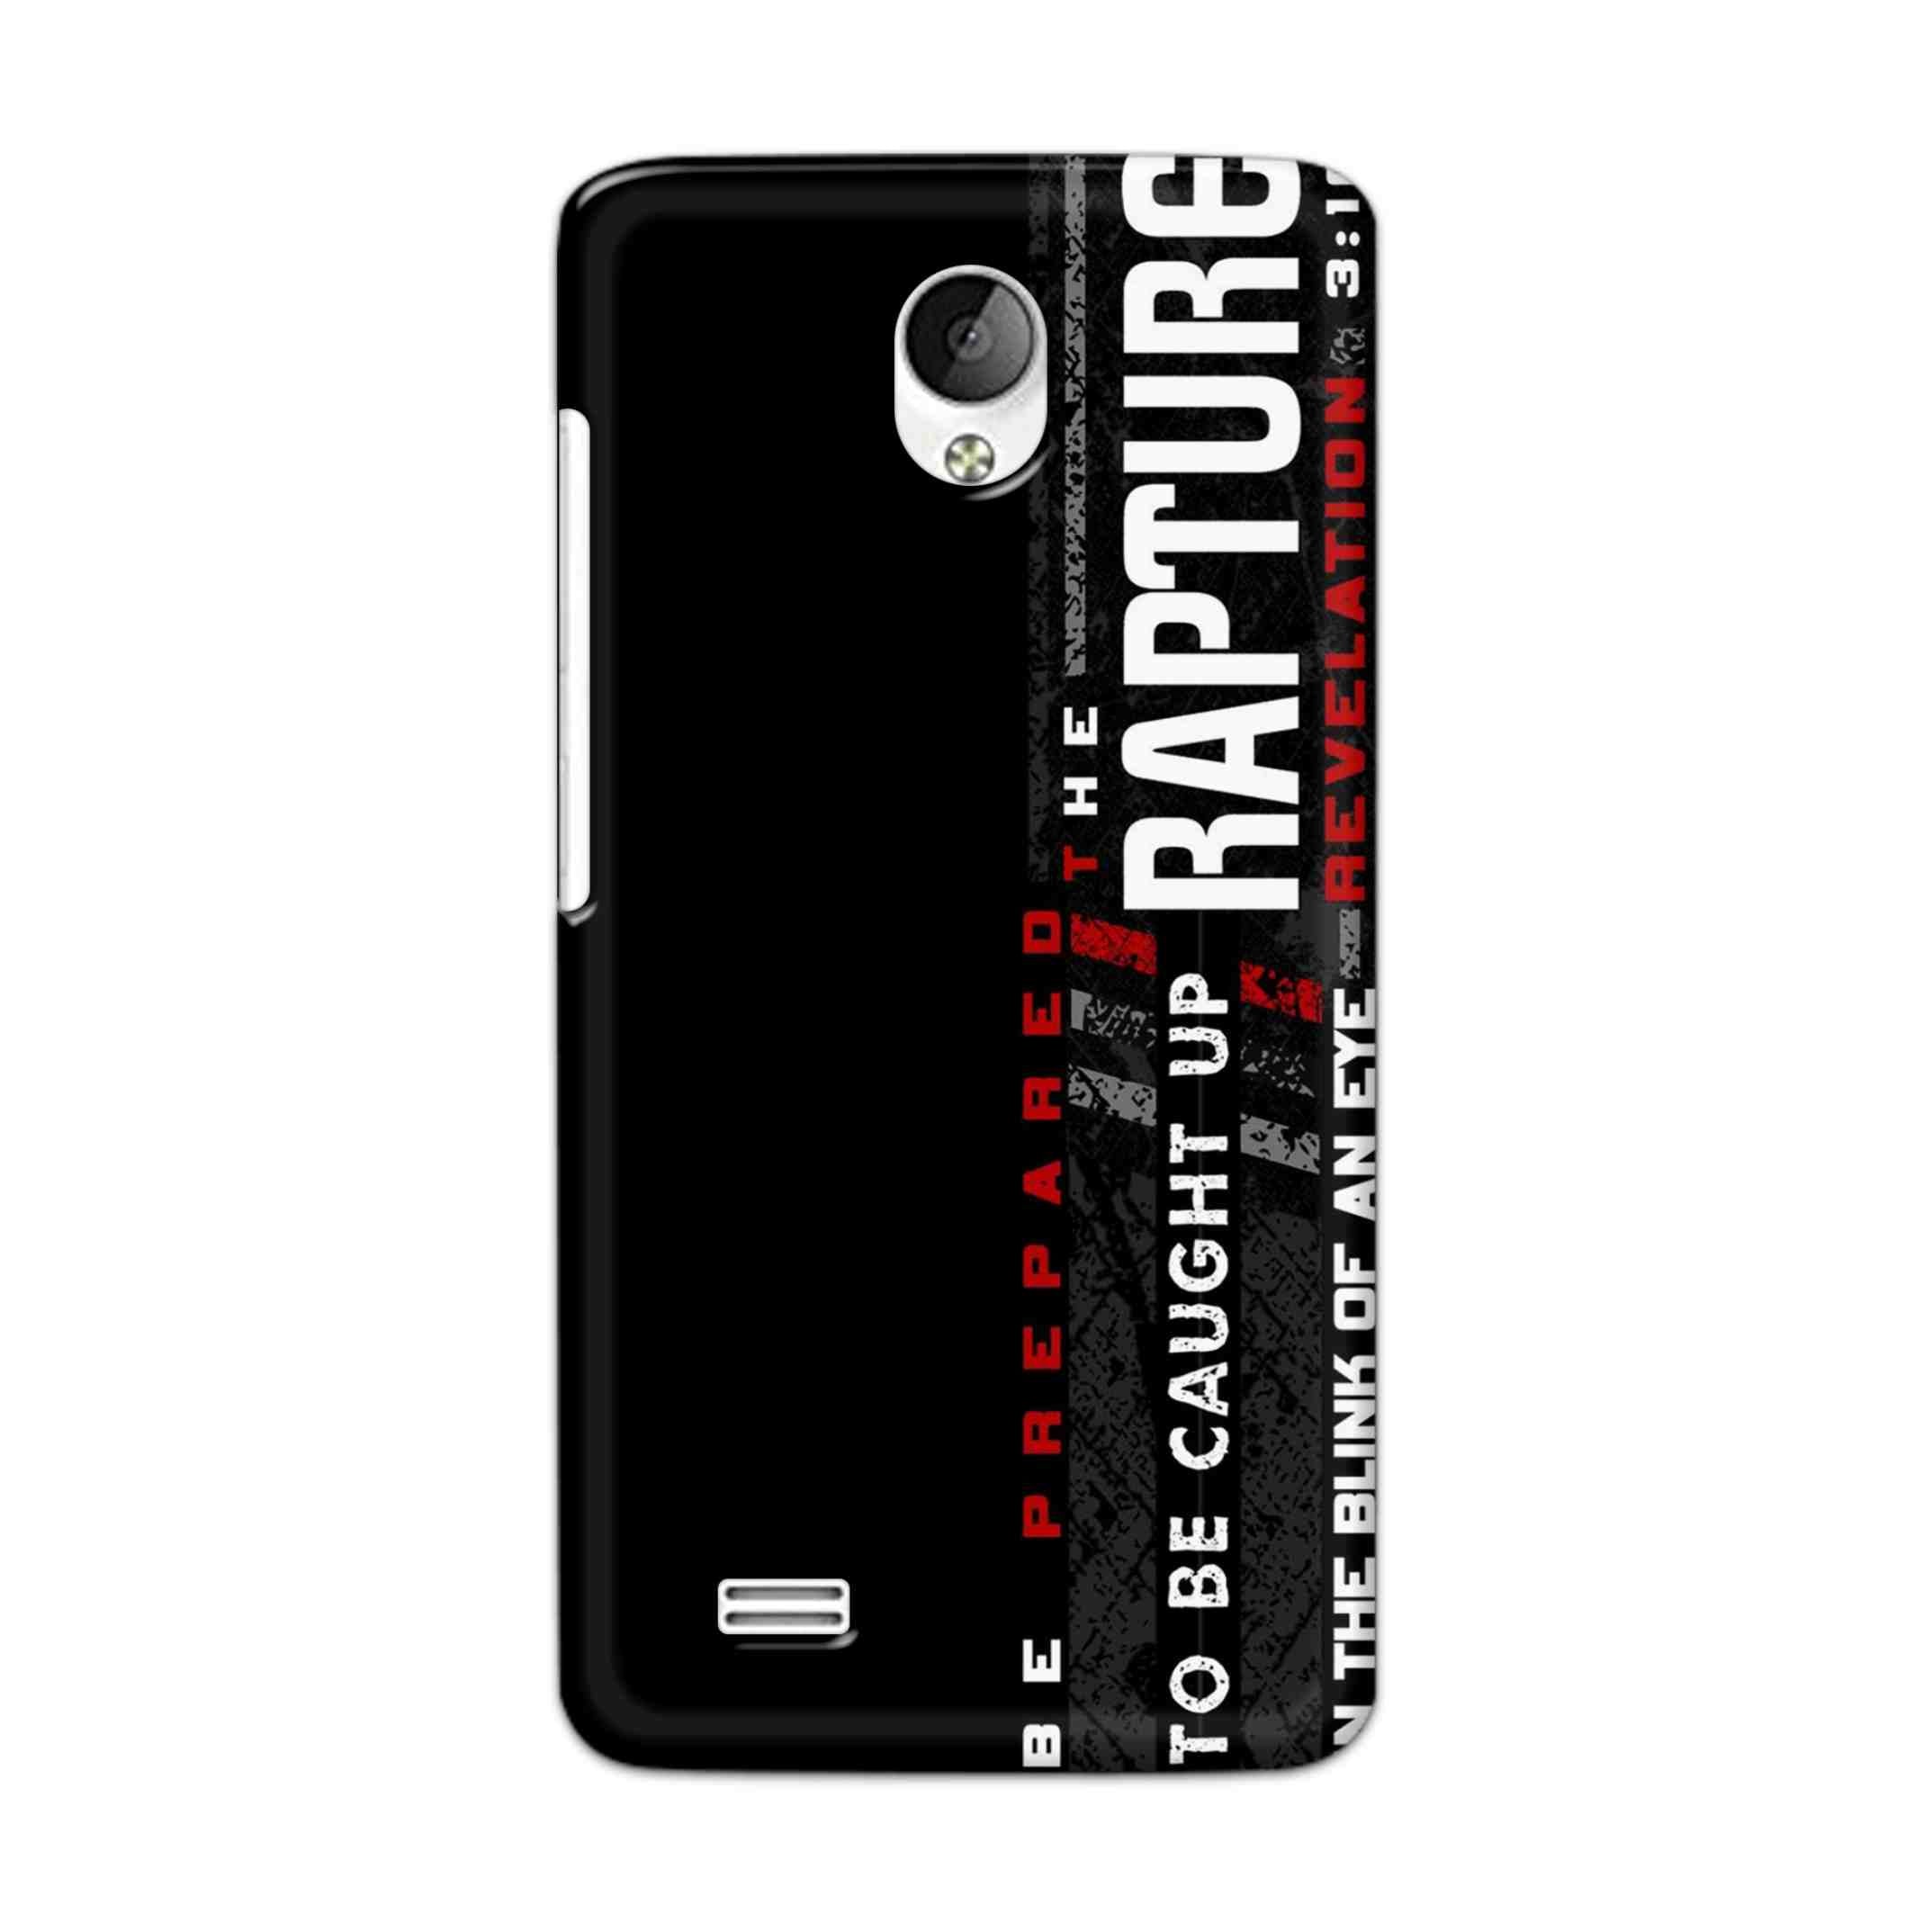 Buy Rapture Hard Back Mobile Phone Case Cover For Vivo Y21 / Vivo Y21L Online